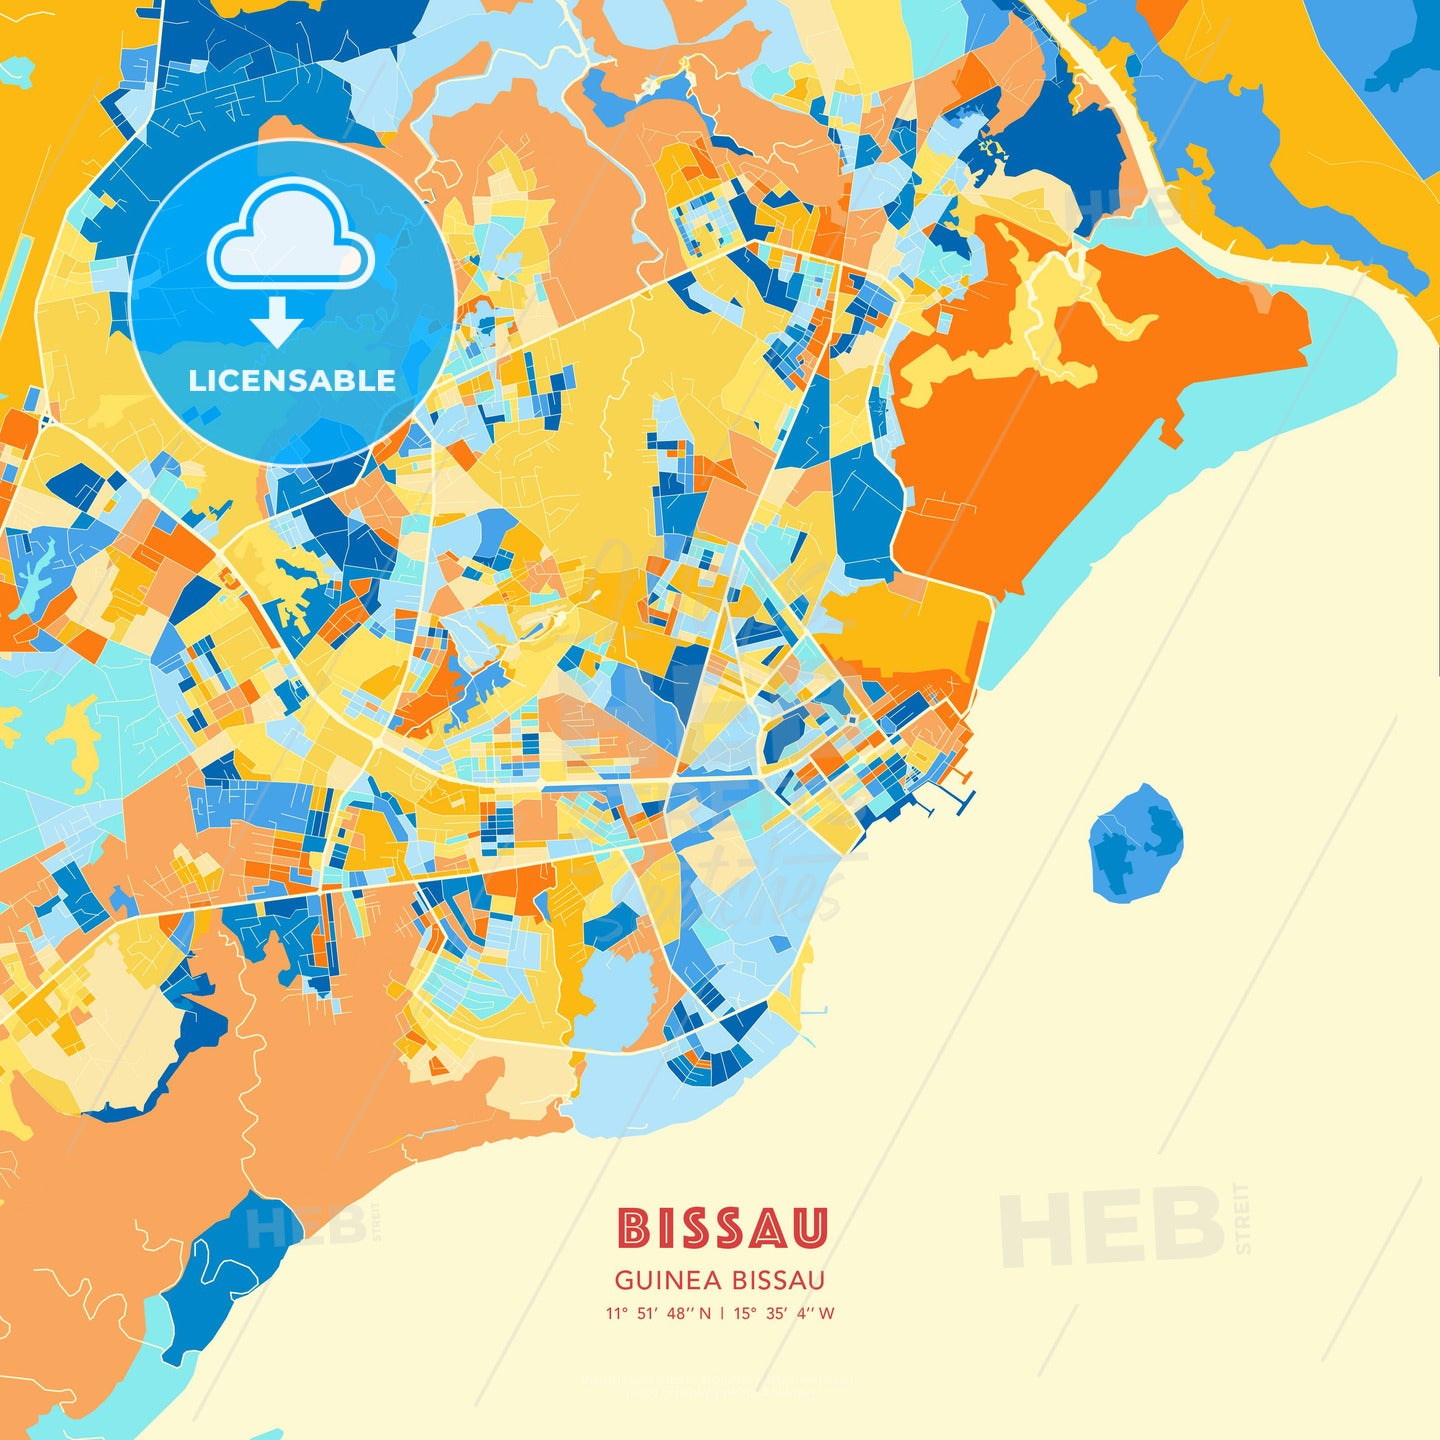 Bissau, Guinea Bissau, map - HEBSTREITS Sketches